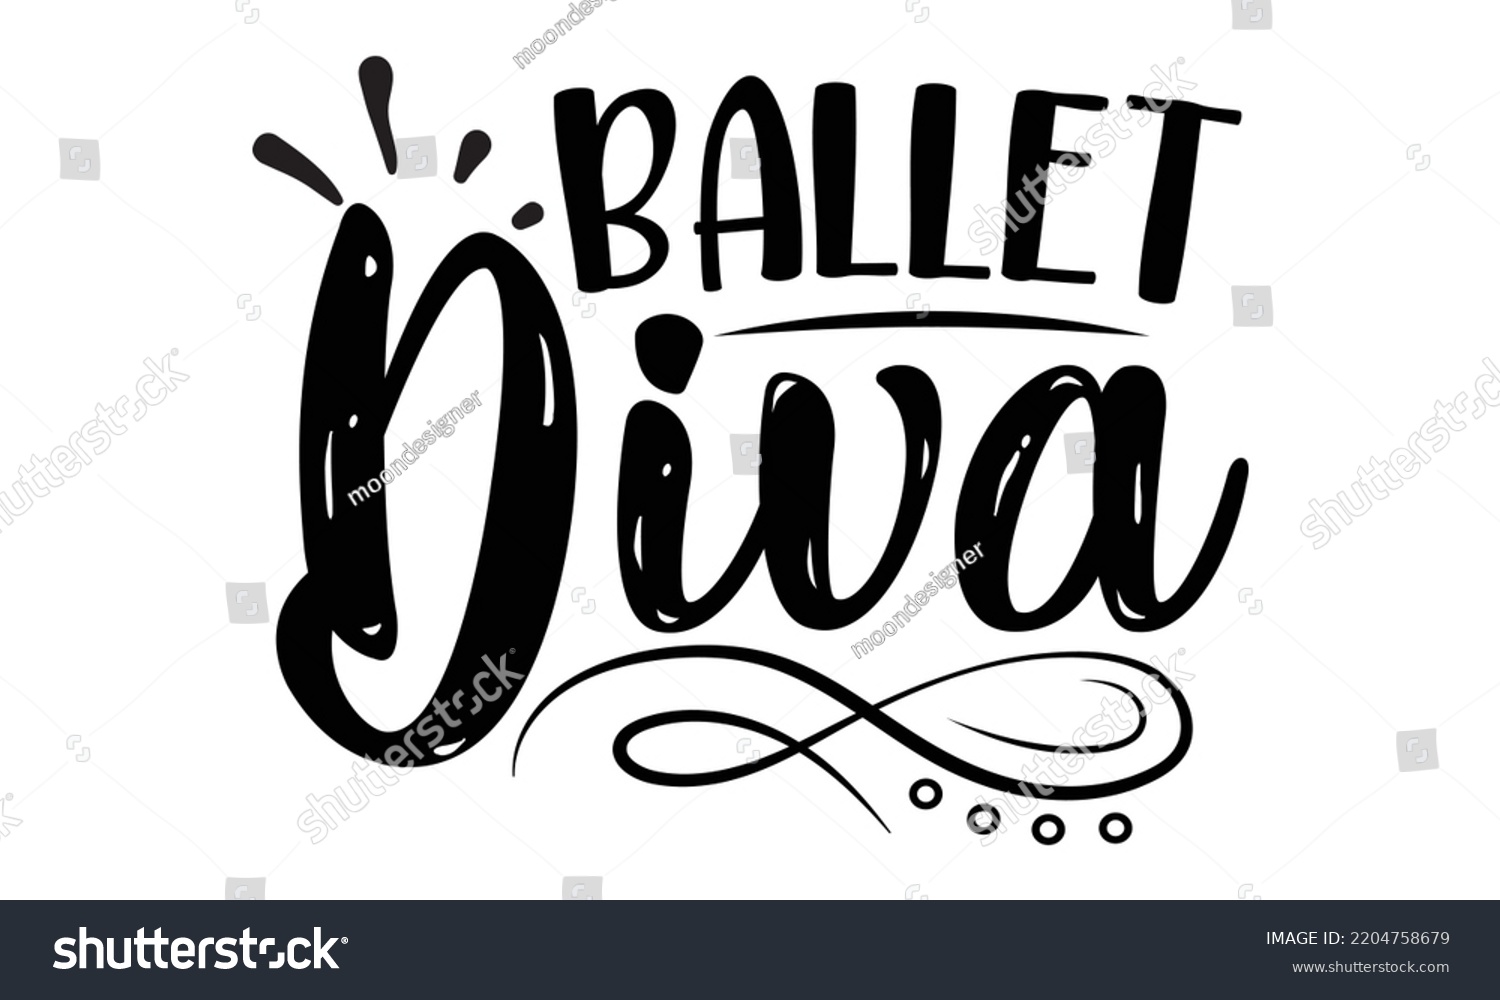 SVG of Ballet diva - Ballet svg t shirt design, ballet SVG Cut Files, Girl Ballet Design, Hand drawn lettering phrase and vector sign, EPS 10 svg